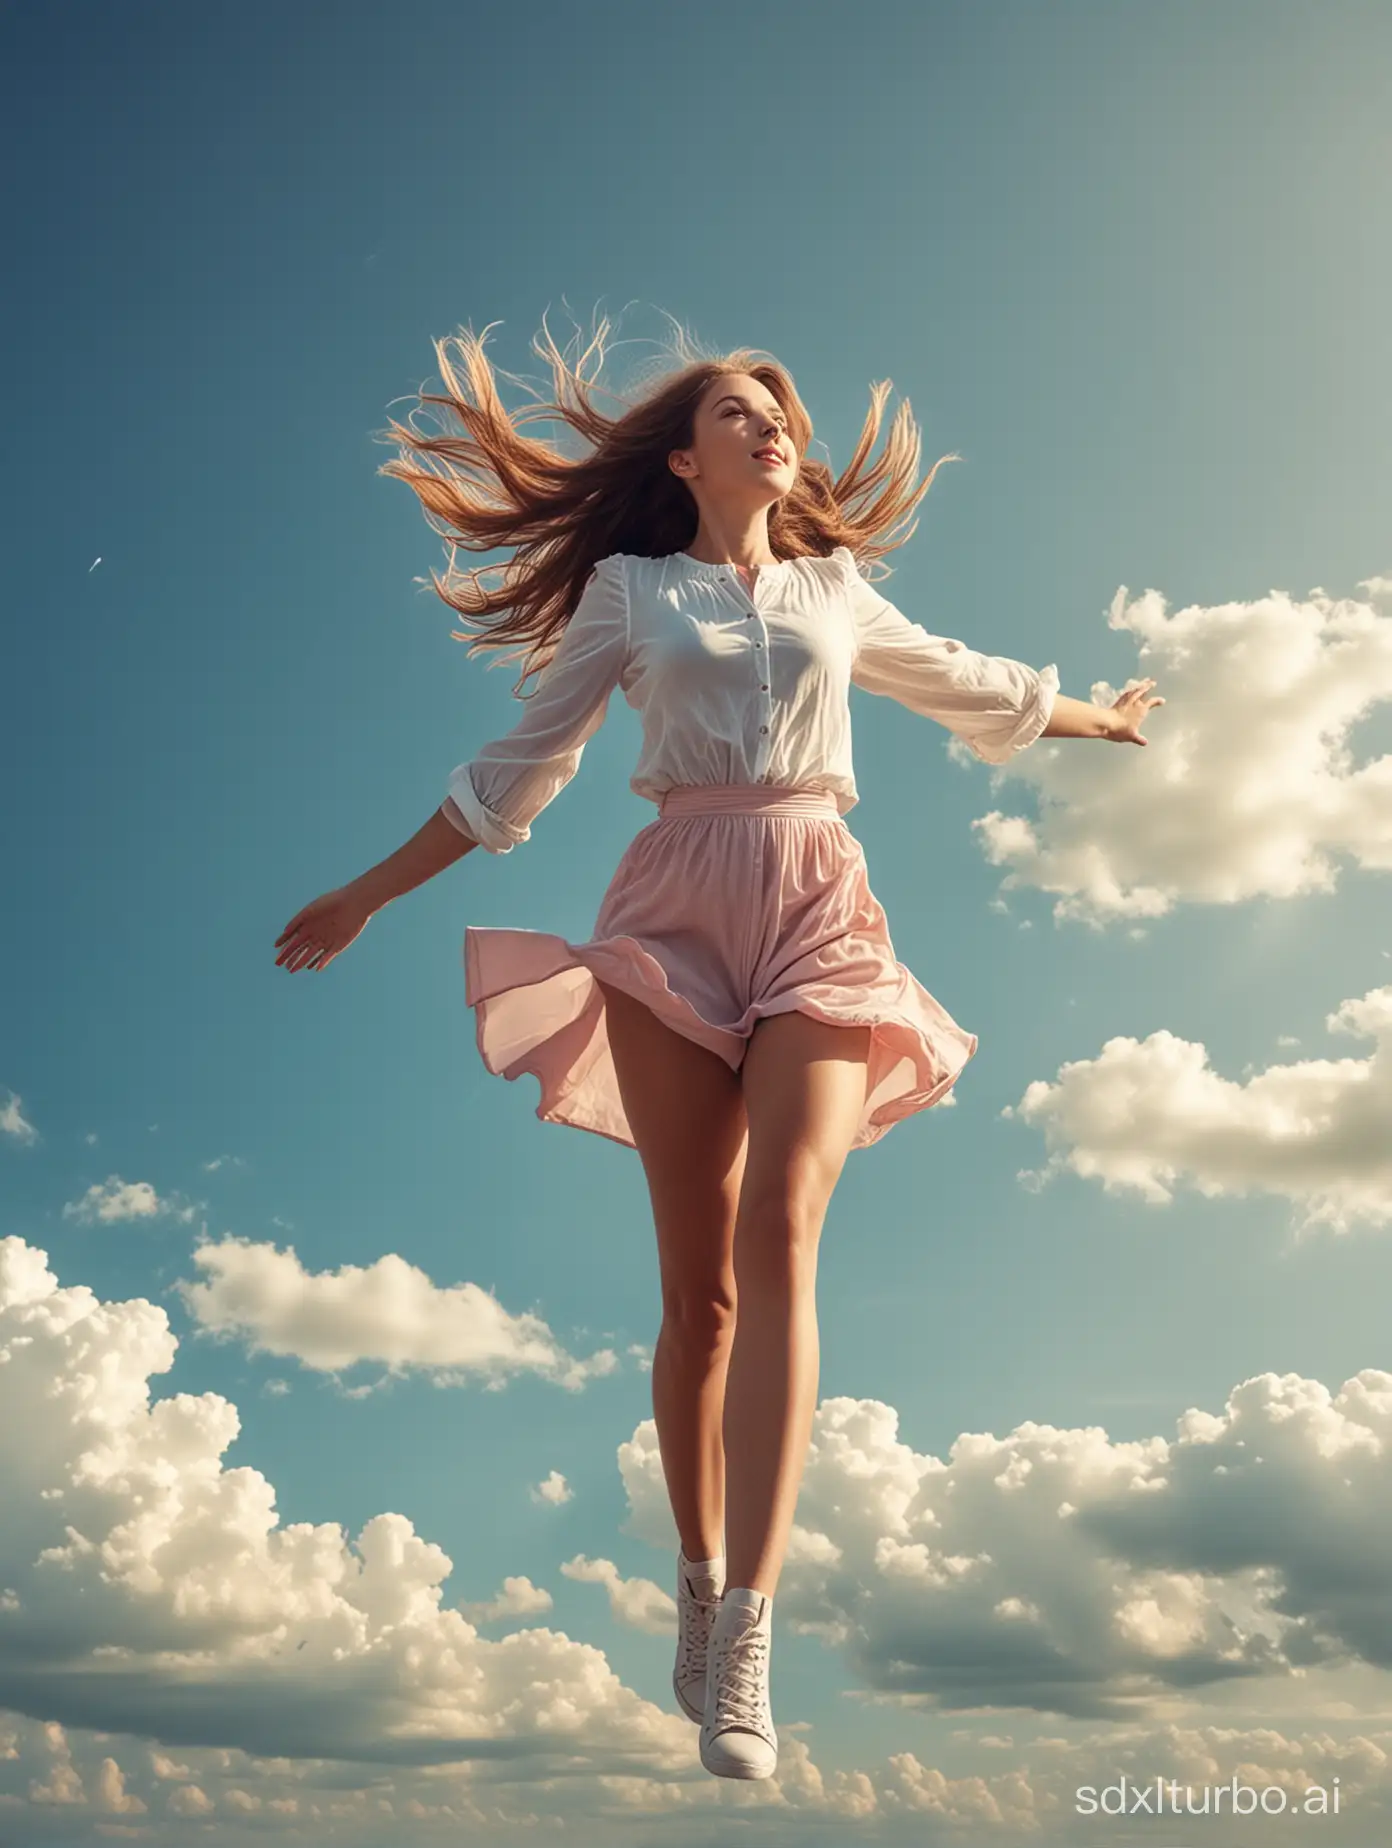 girl fly in sky